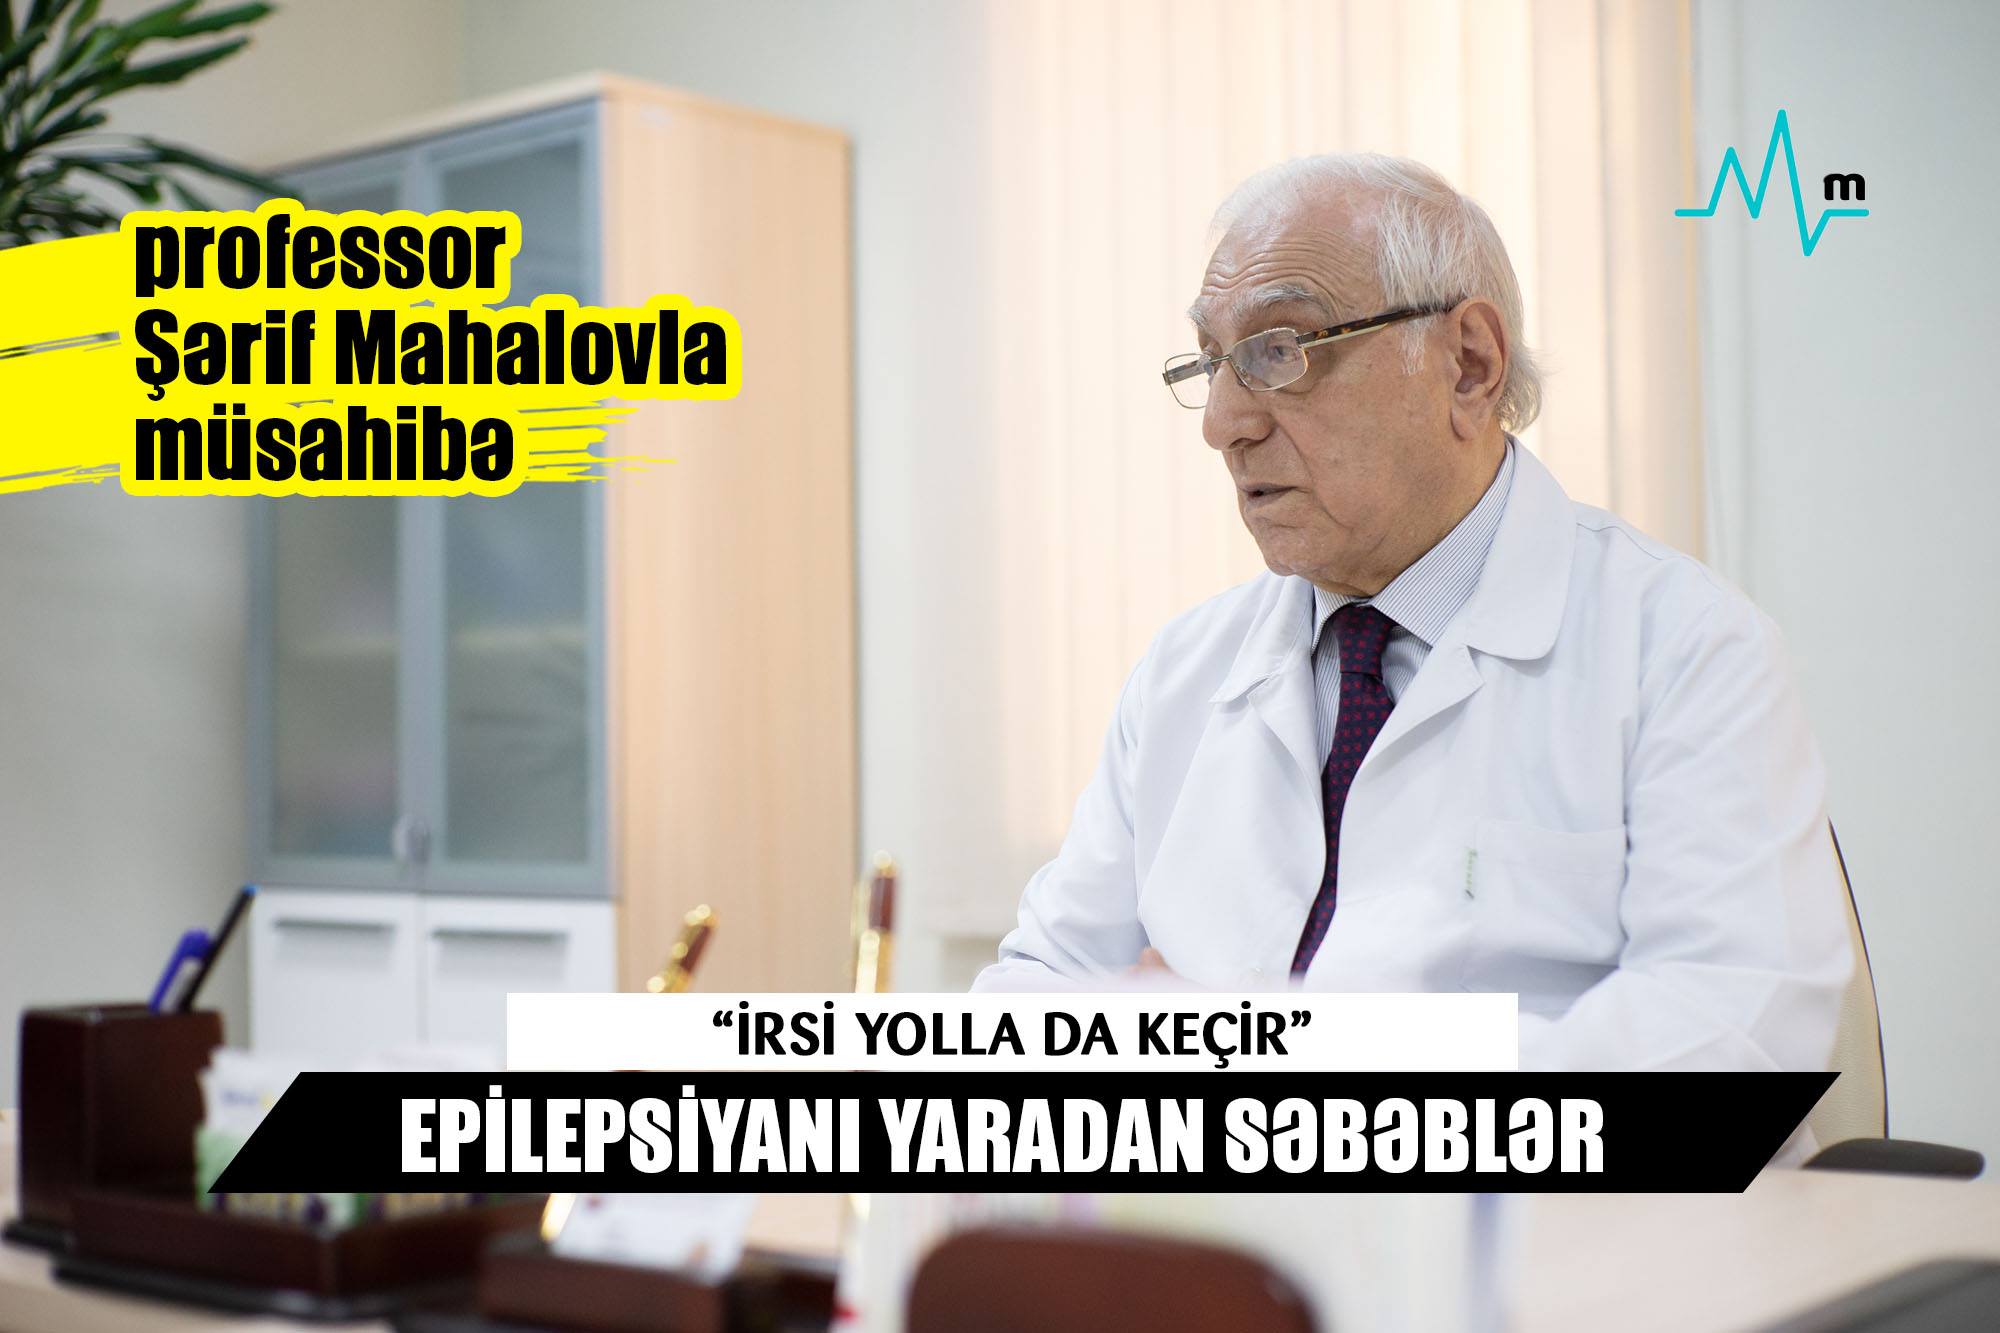  Epilepsiyanı yaradan səbəblər- “İrsi yolla da keçir”  - Professor Şərif Mahalovla MÜSAHİBƏ